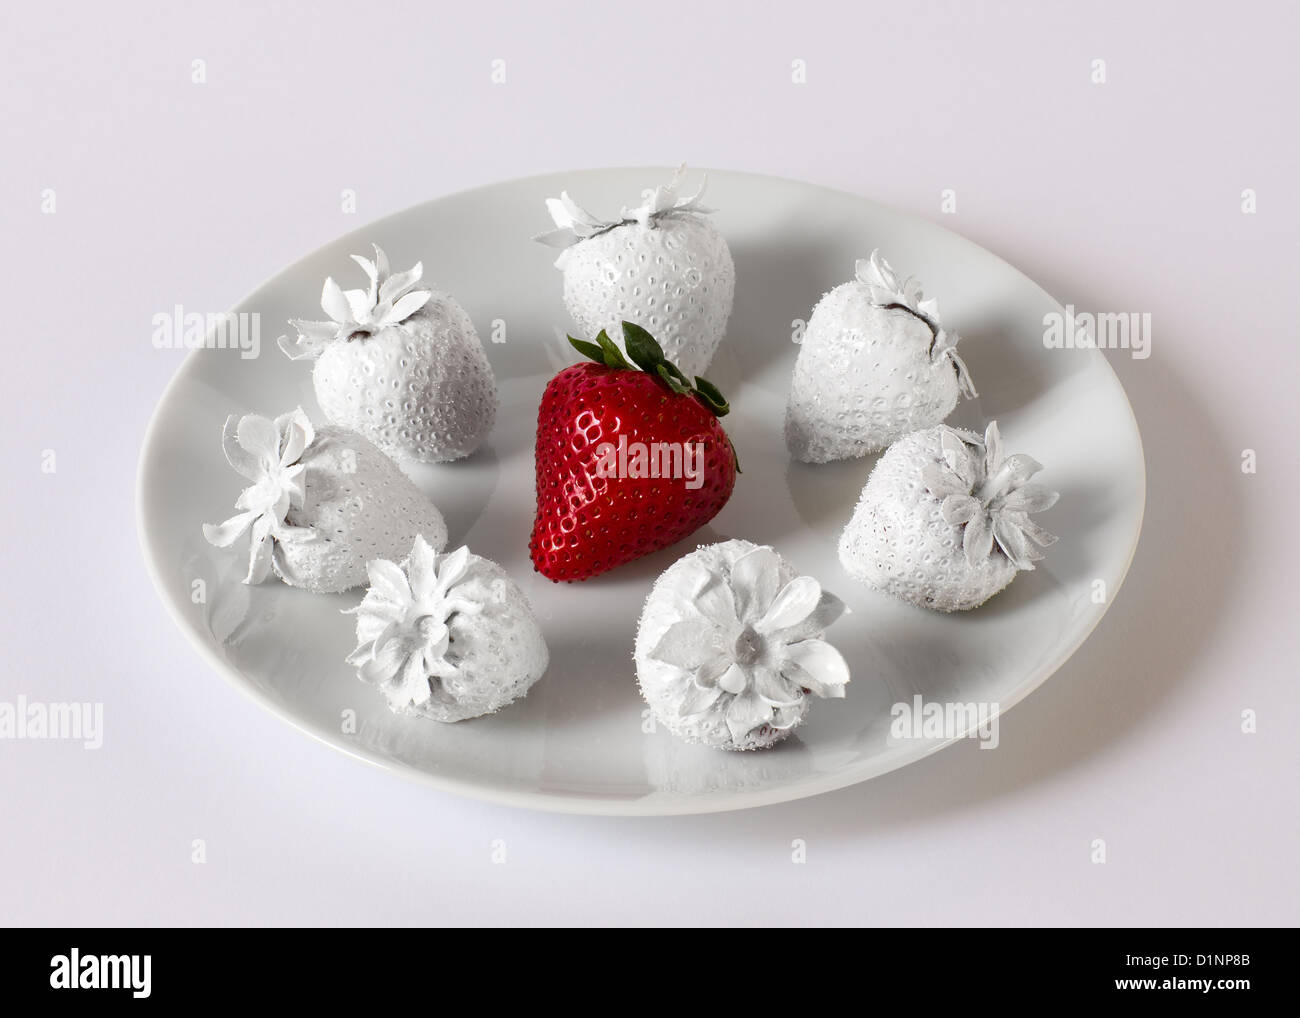 Eine rote Erdbeere umgeben von weißen Erdbeeren auf einem weißen Teller. Stockfoto